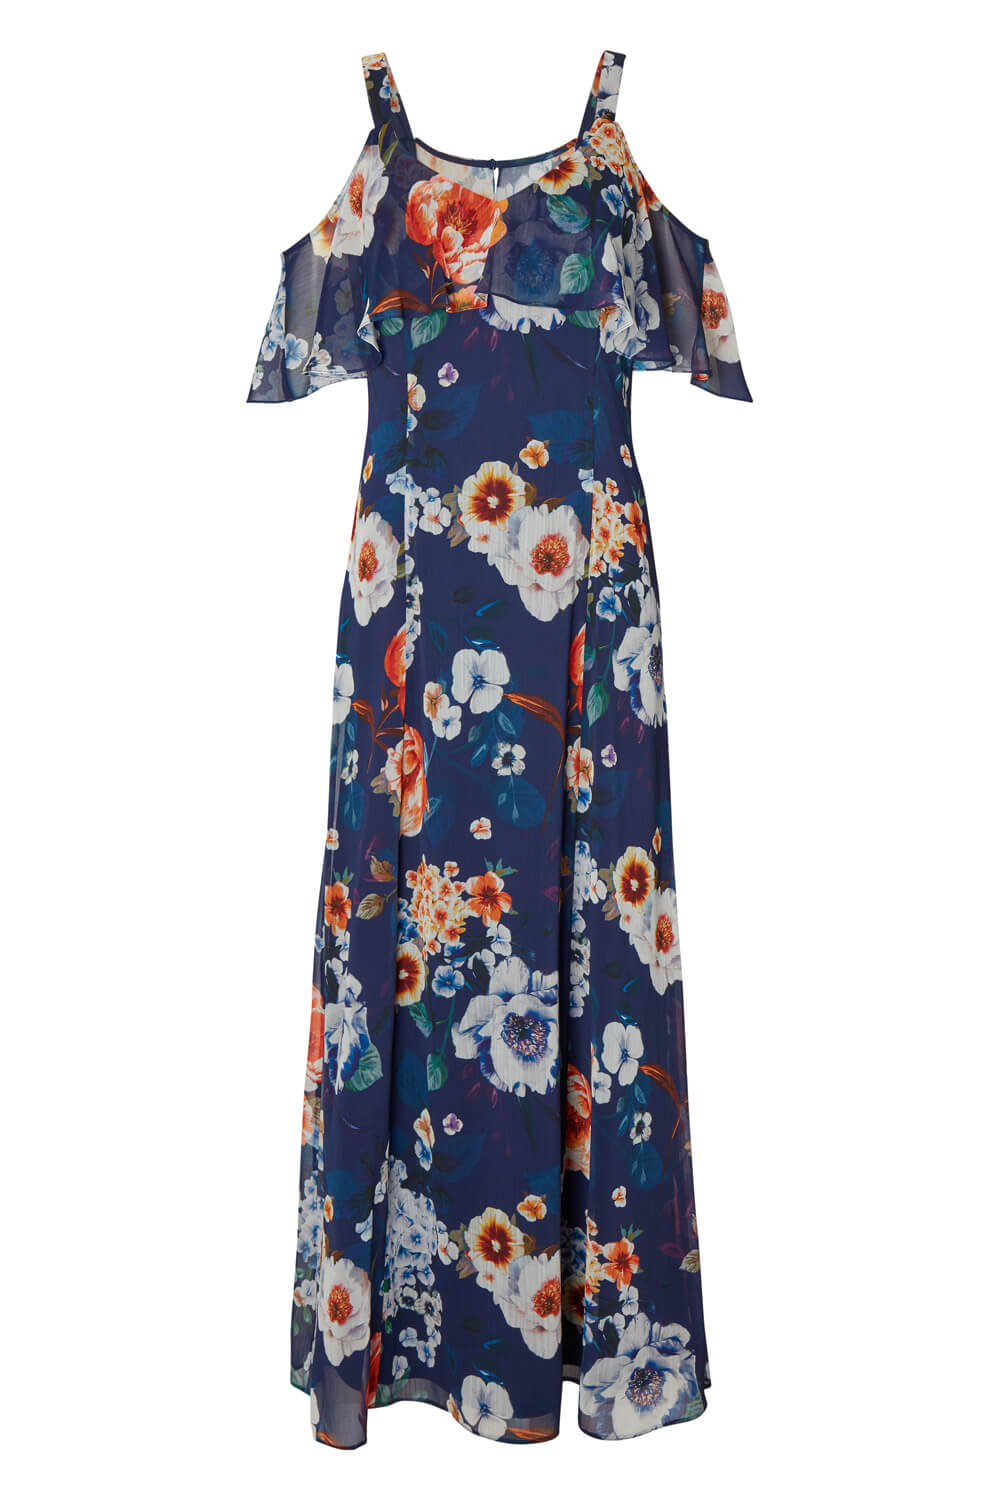 Floral Cold Shoulder Chiffon Maxi Dress in Navy - Roman Originals UK